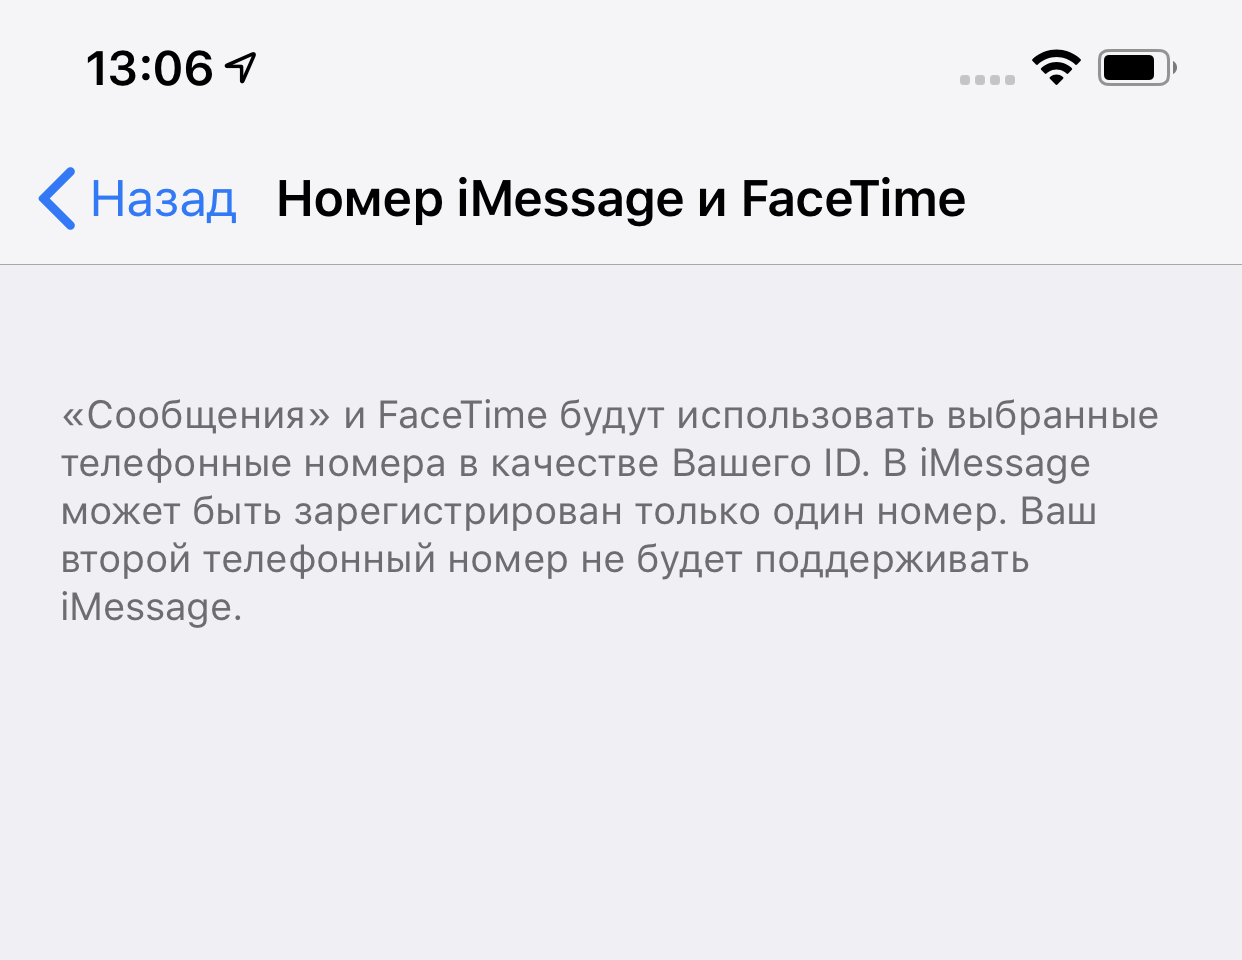 Как можно догадаться, iMessage и Facetime откликаются только на один номер